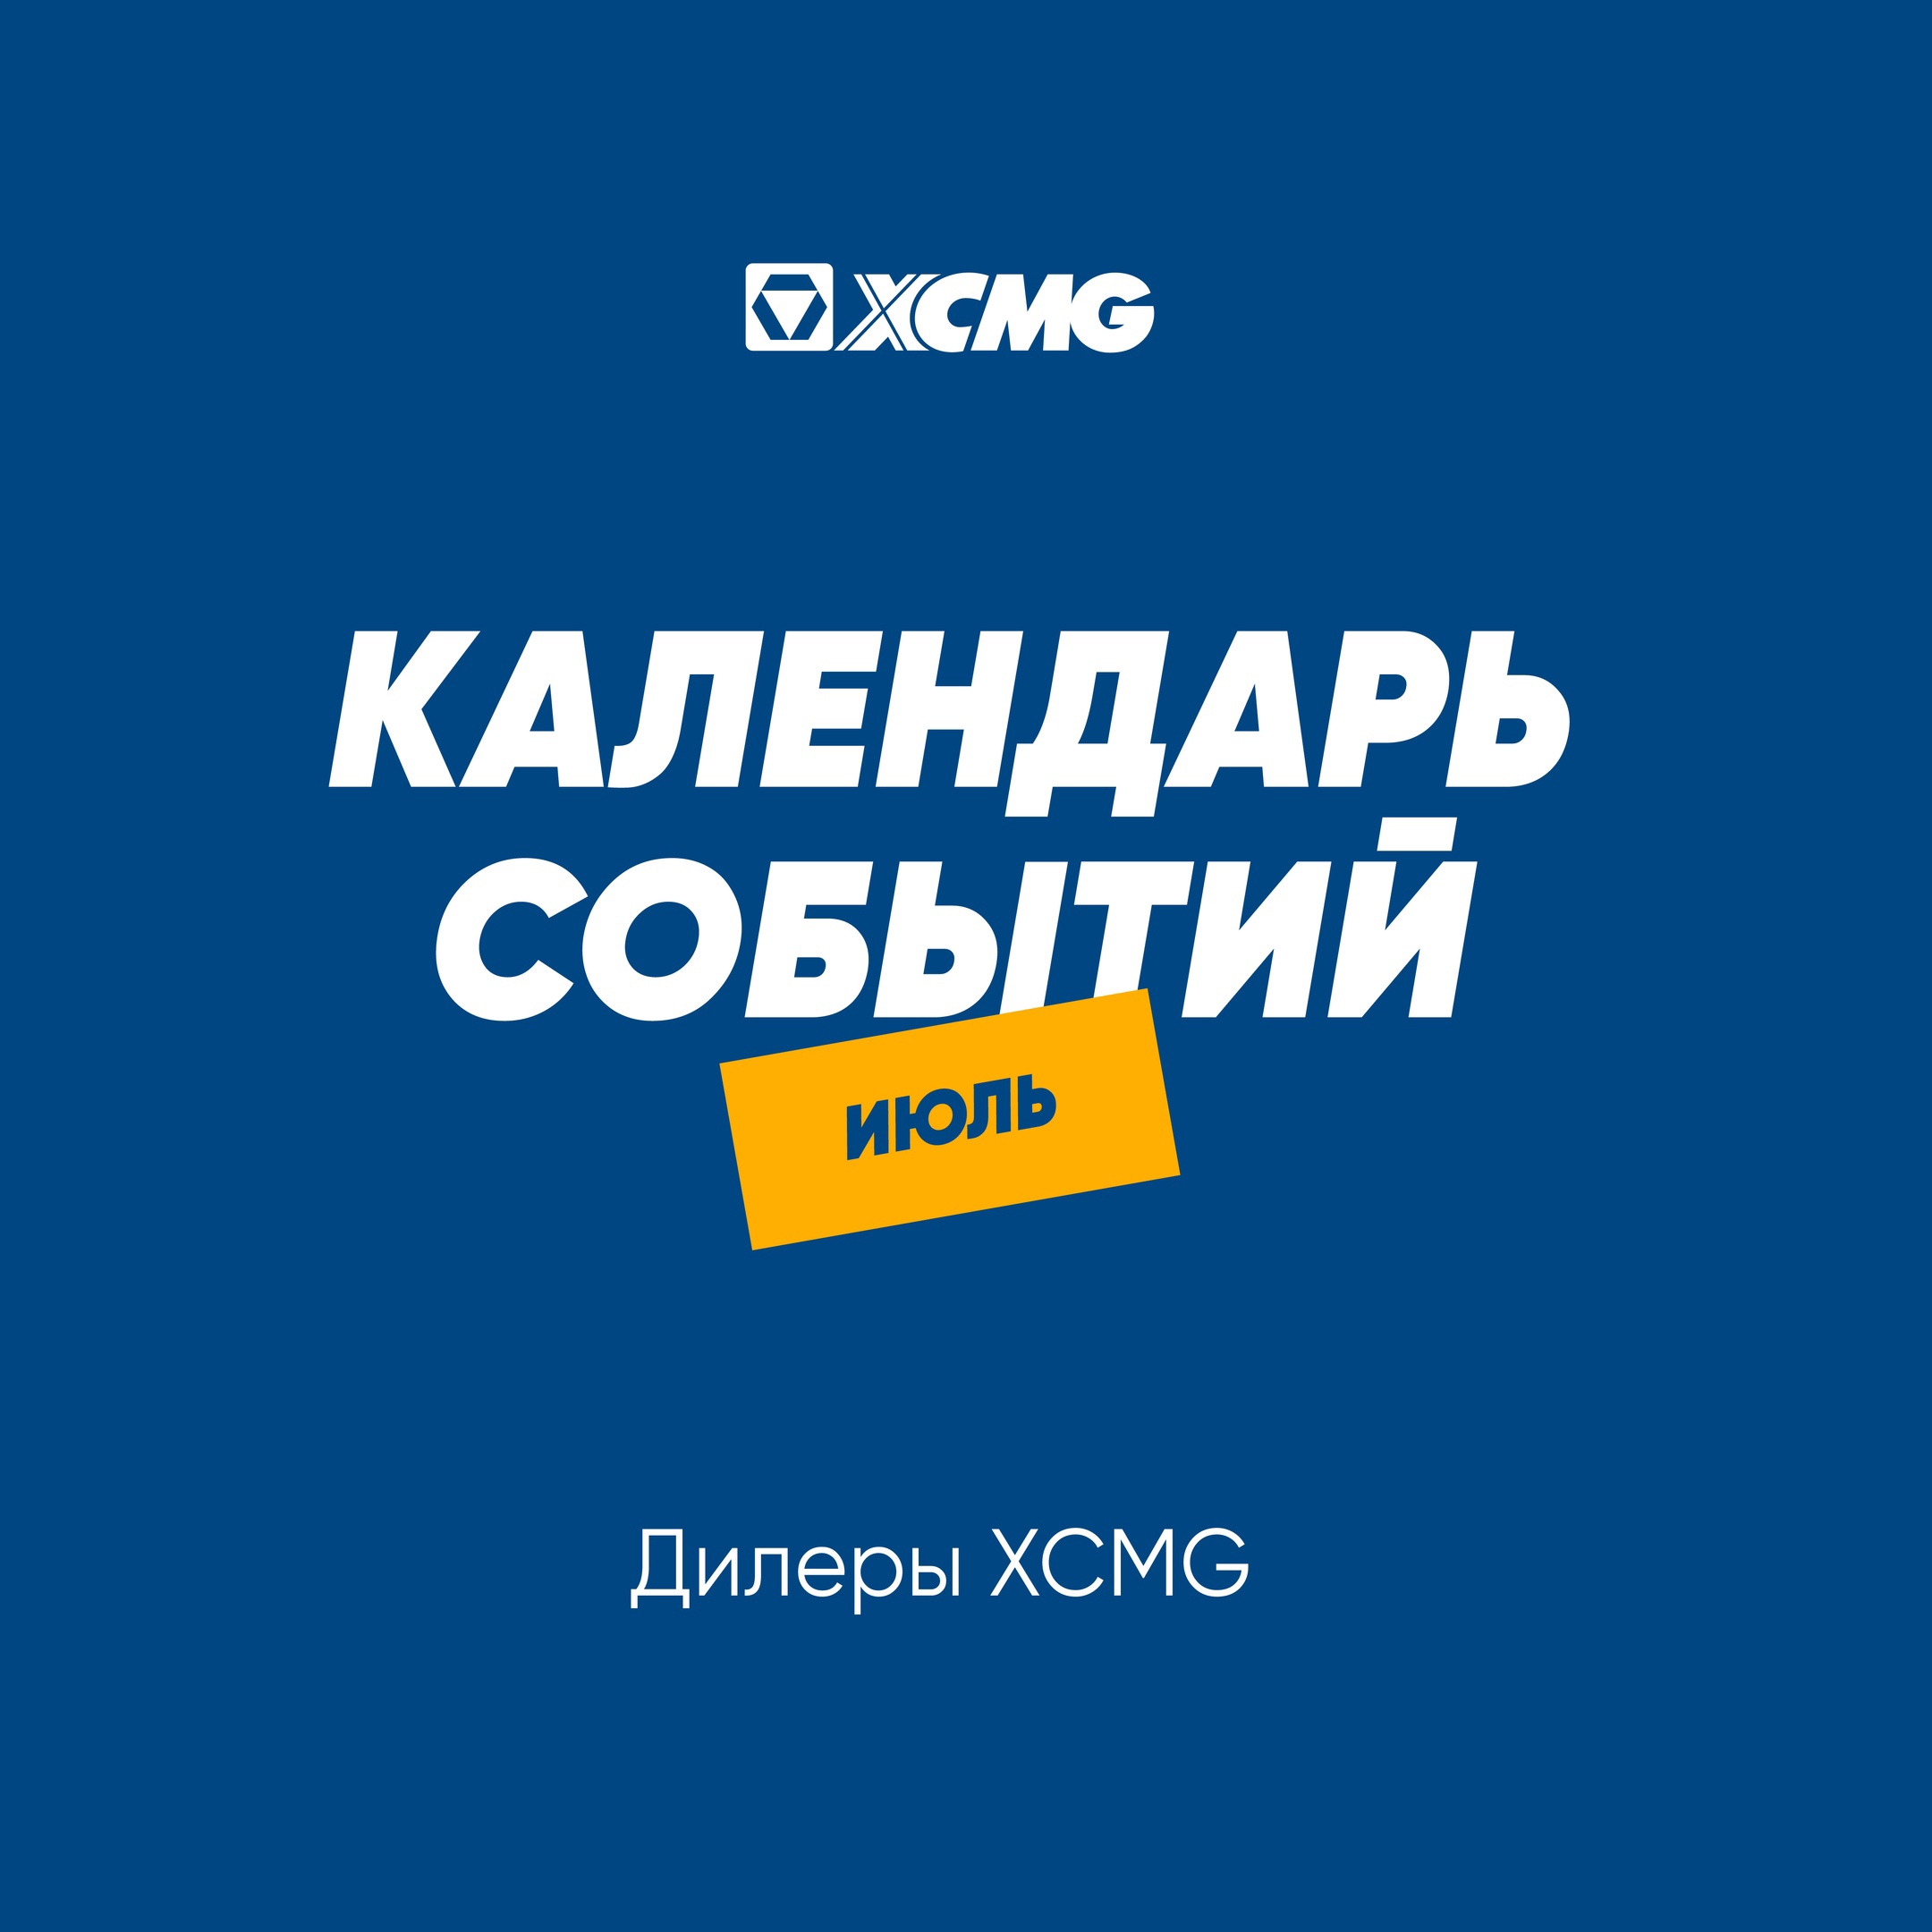 XCMG на Агропромышленных выставках в России! Дайджест на июль